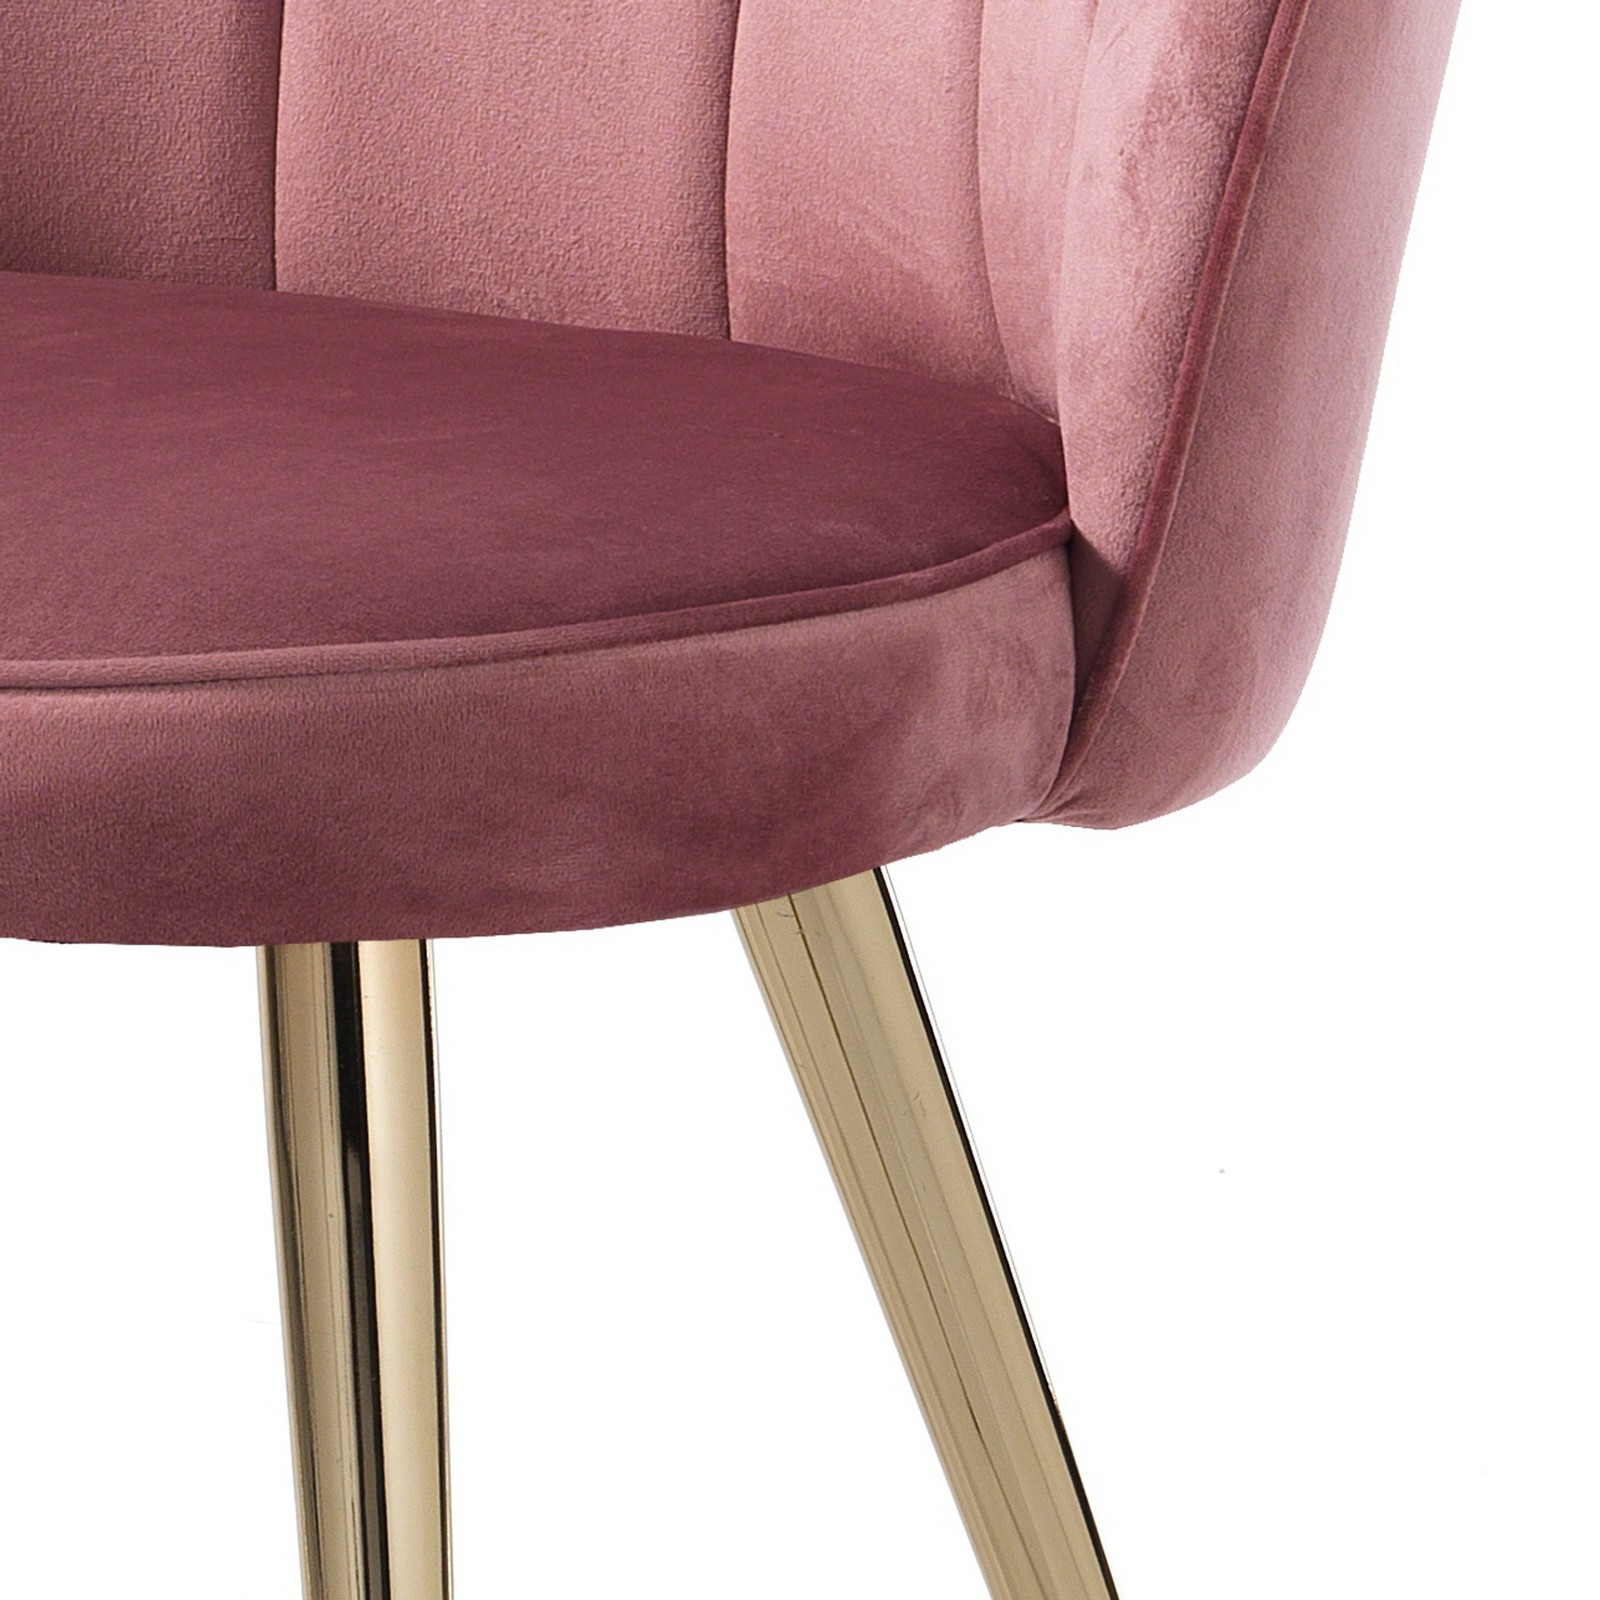 Sedia Charlotte Pink in tessuto effetto velluto Rosa Cipria e metallo verniciato Oro lucido, 57x58xh78 cm